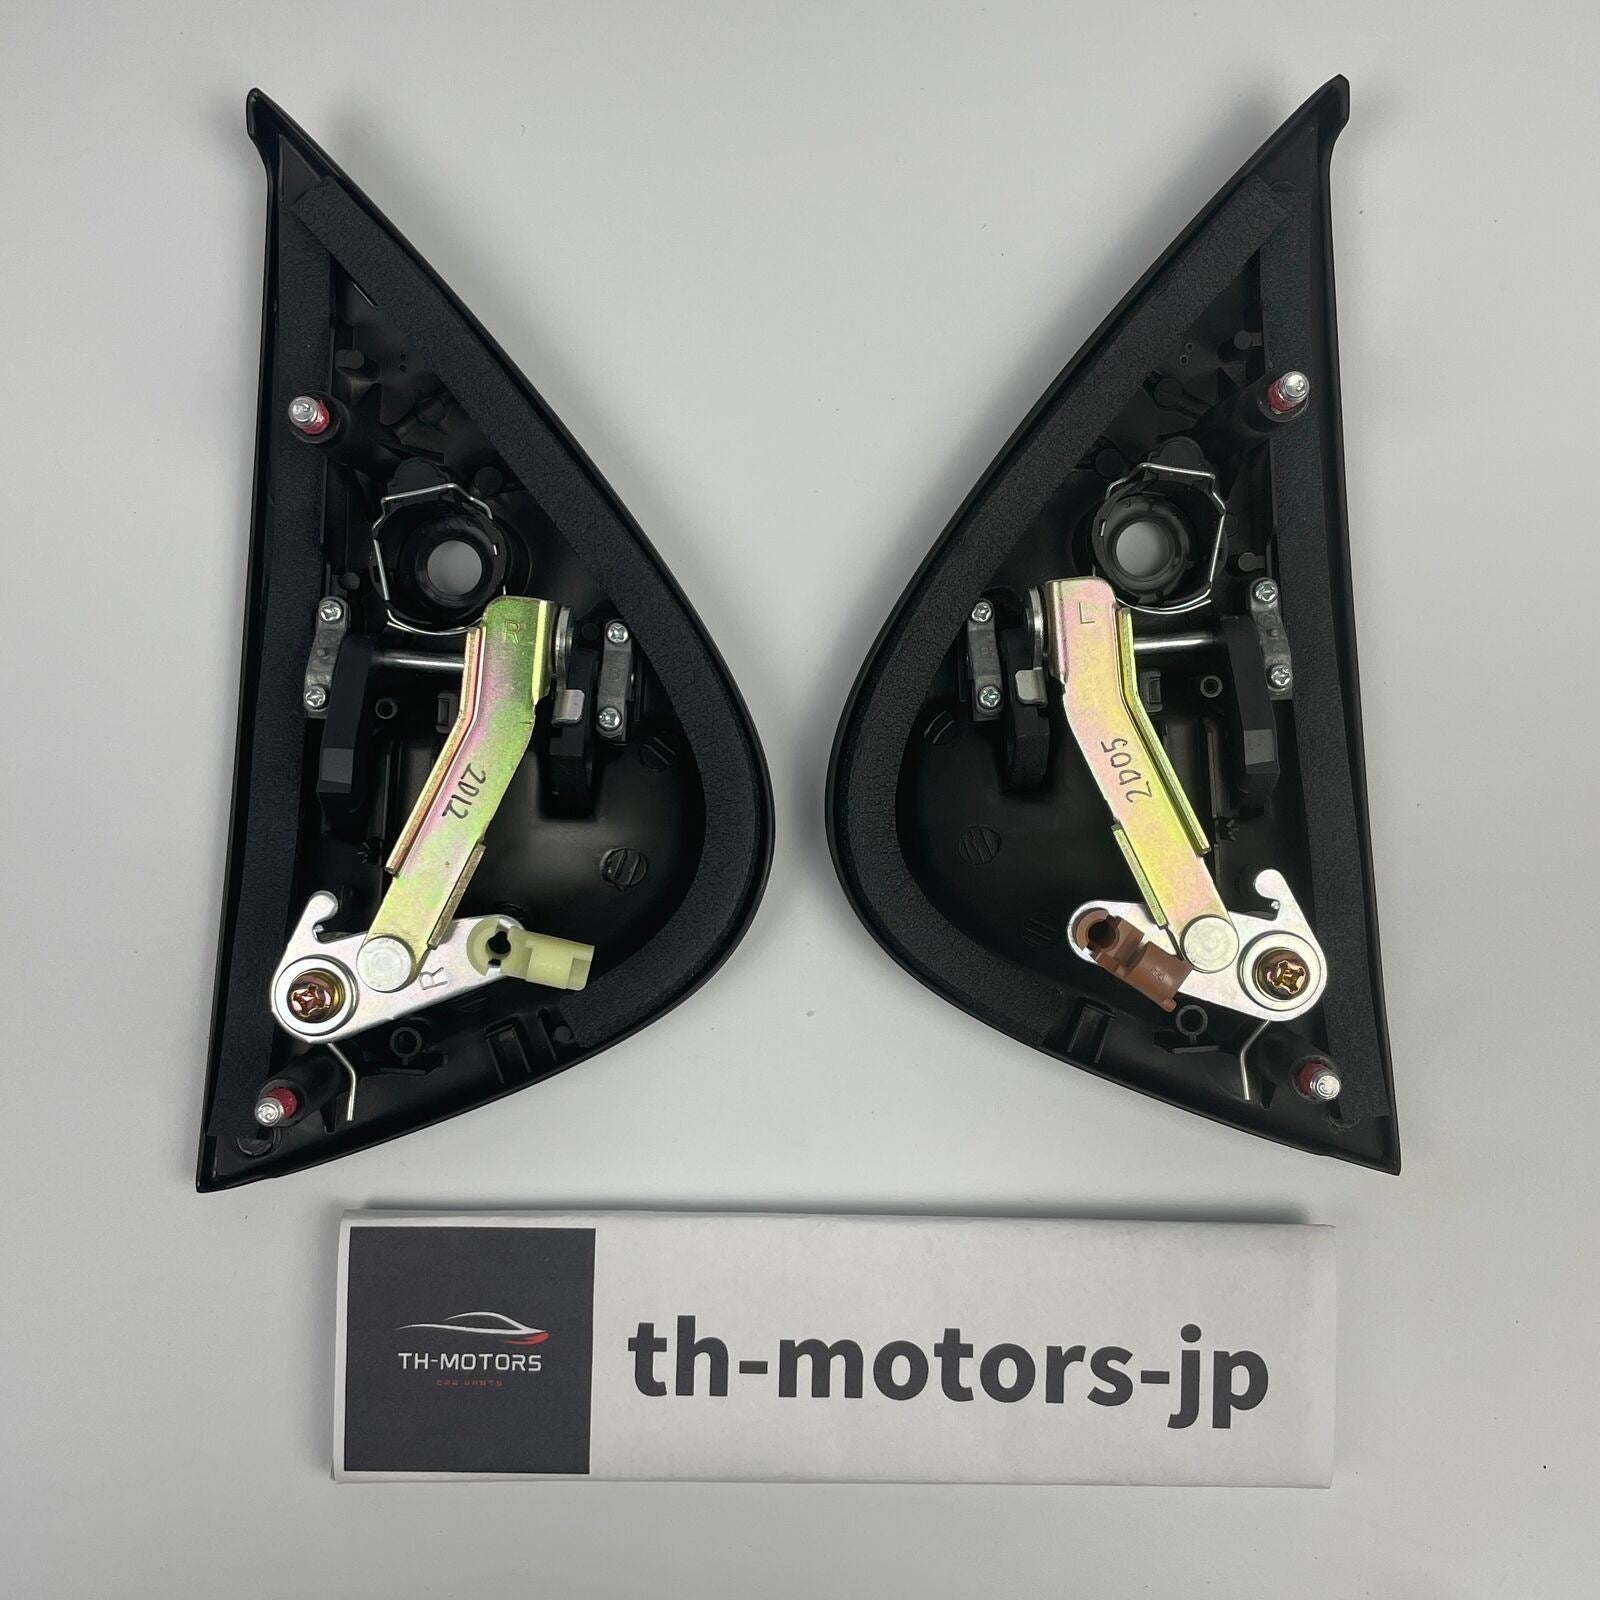 RX-7 – th-motors-jp